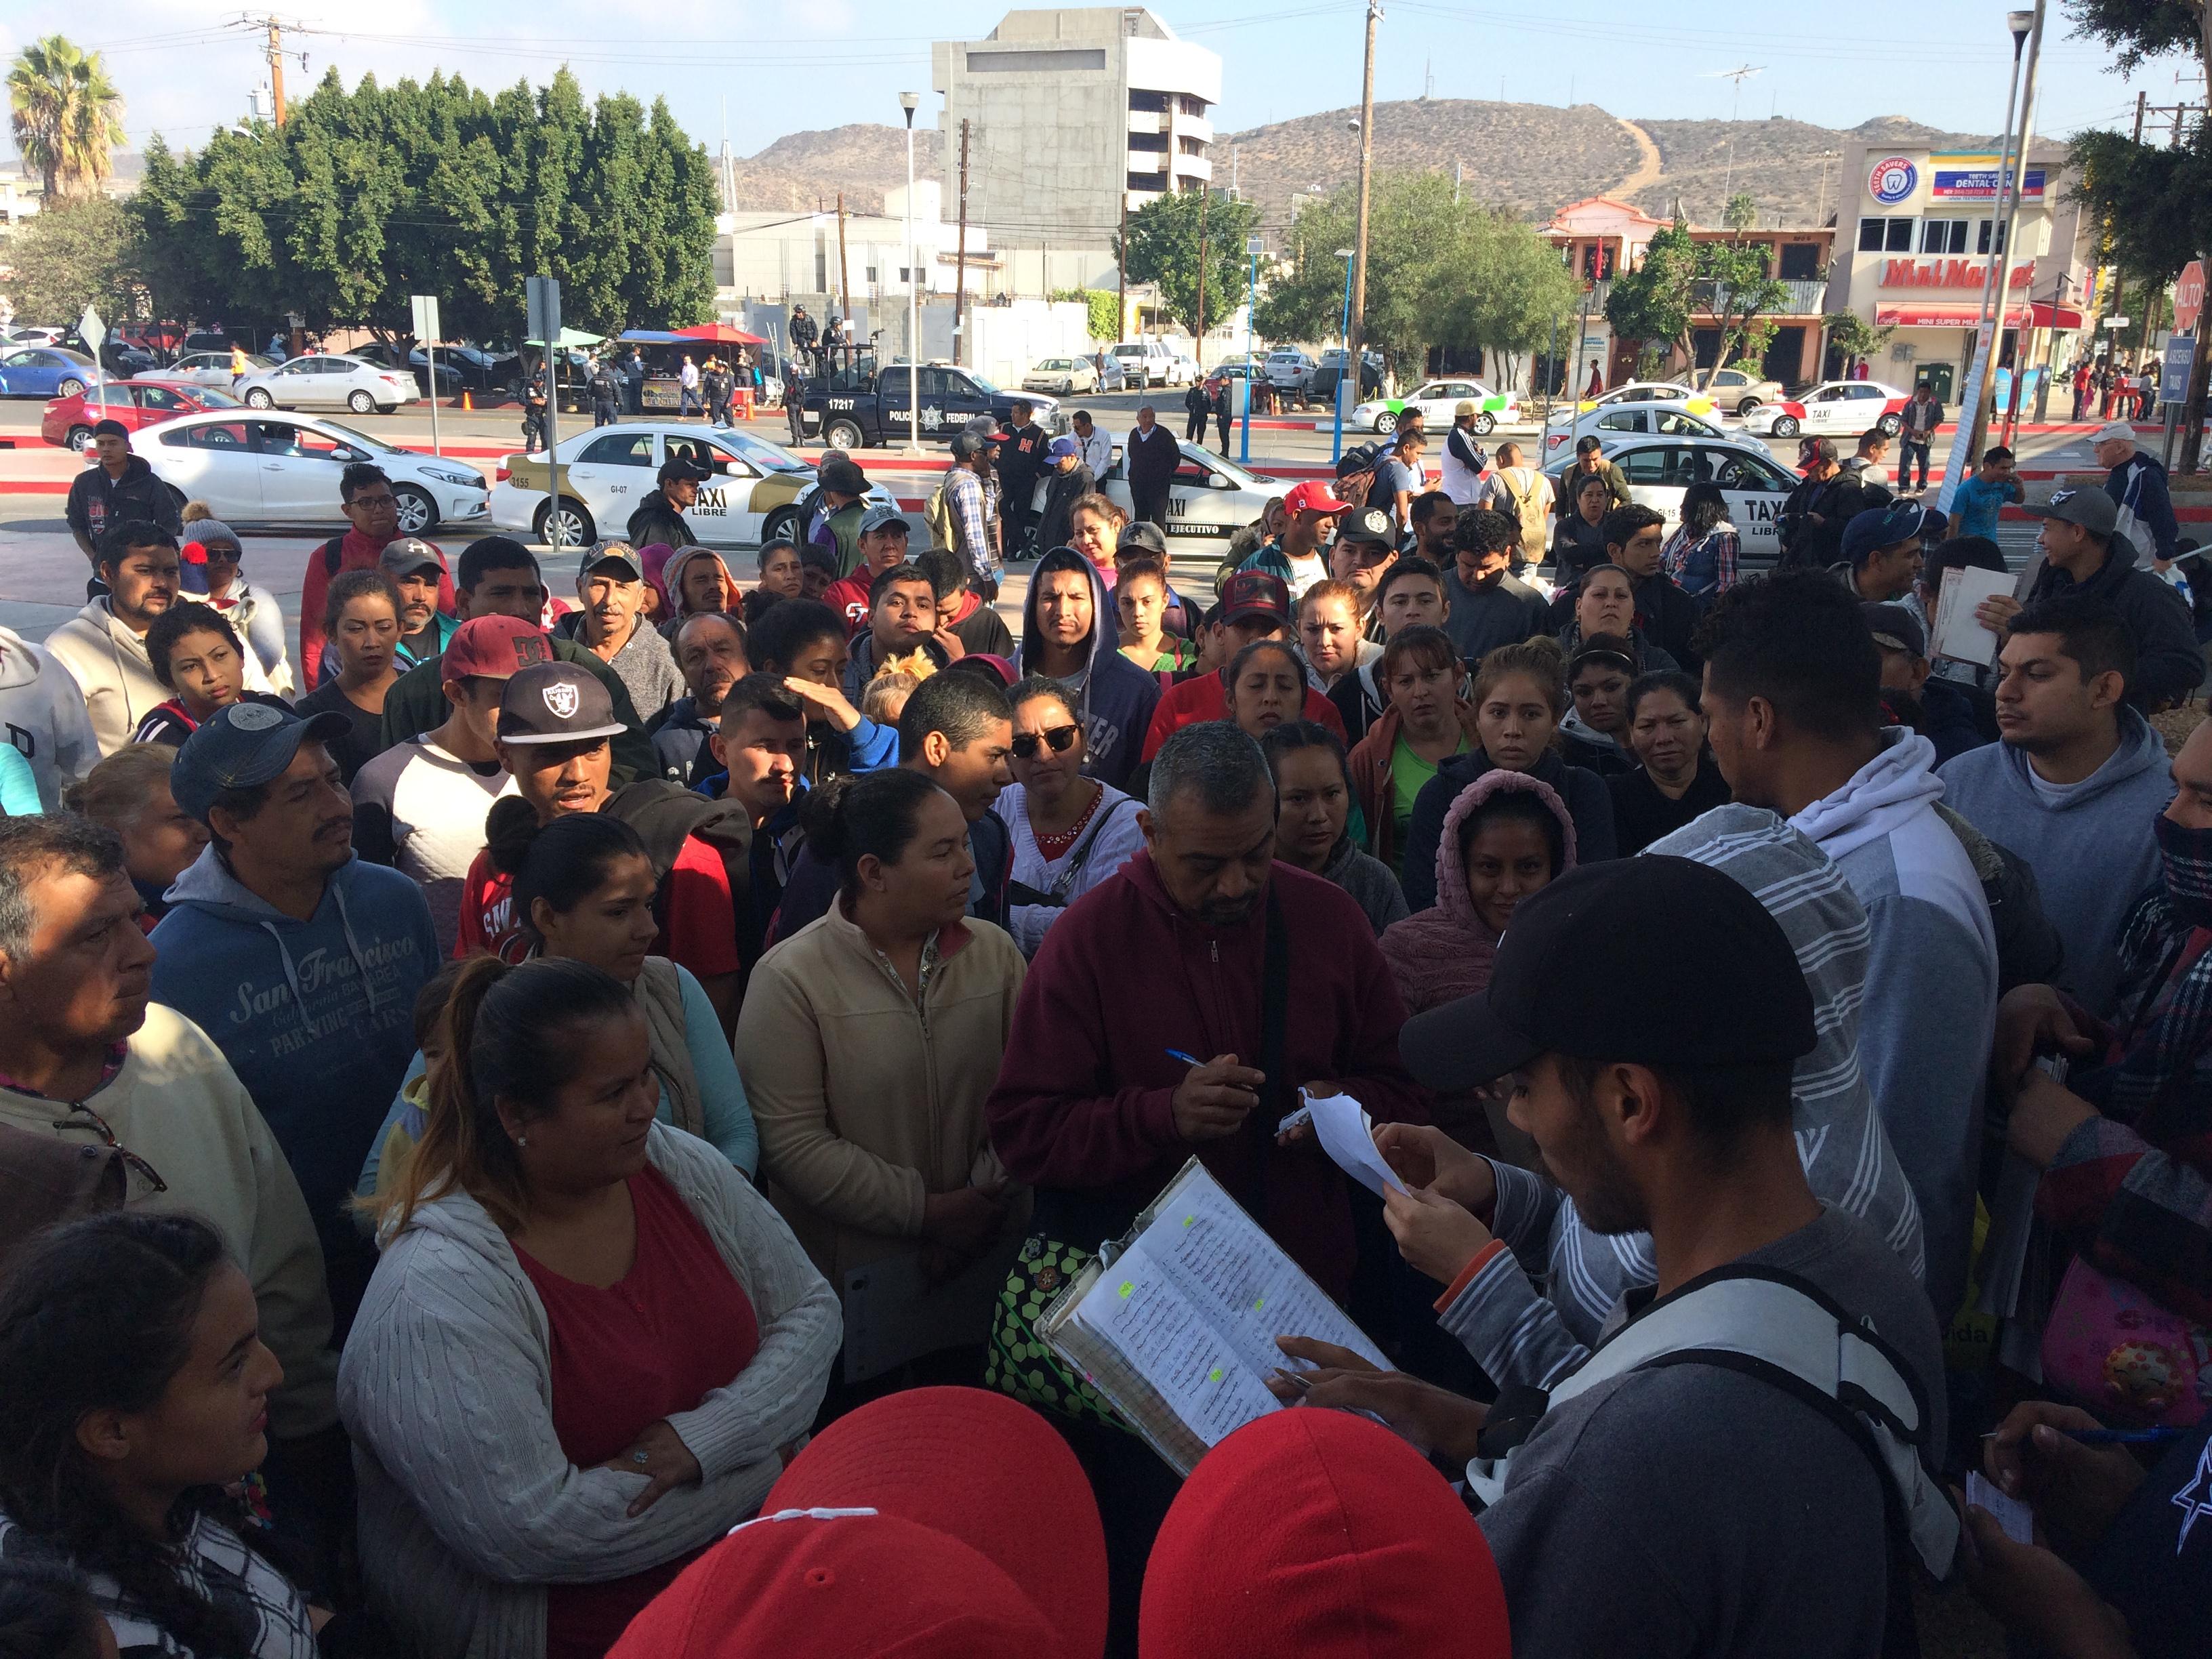 Des migrants arrivés depuis longtemps à Tijuana, au Mexique, se chargent de distribuer les numéros aux nouveaux arrivants. [RTS - Emmanuelle Steels]